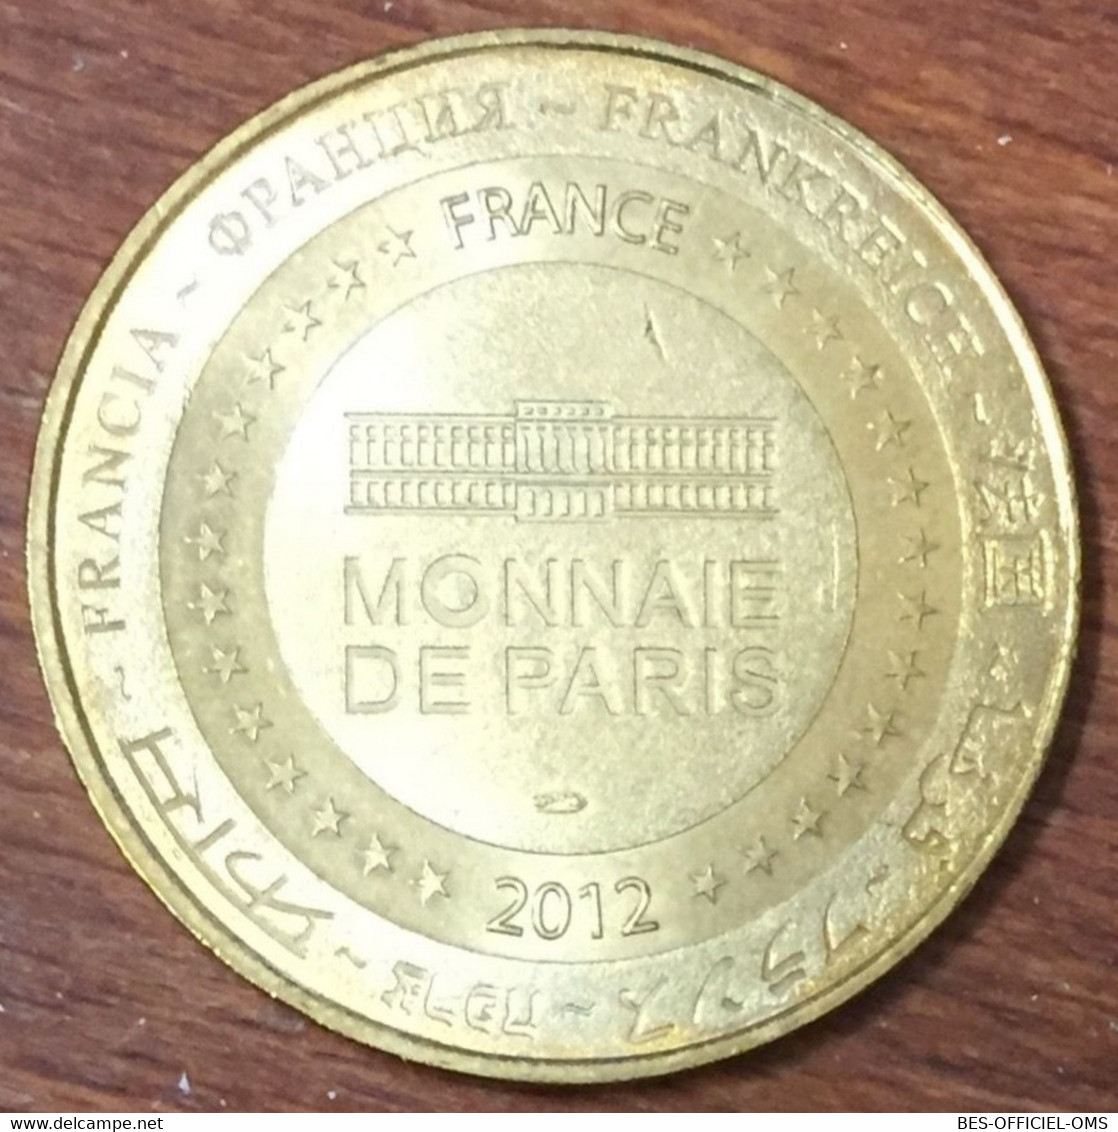 63 VULCANIA DRAGON RIDE MDP 2012 MÉDAILLE SOUVENIR MONNAIE DE PARIS JETON TOURISTIQUE MEDALS COINS TOKENS - 2012